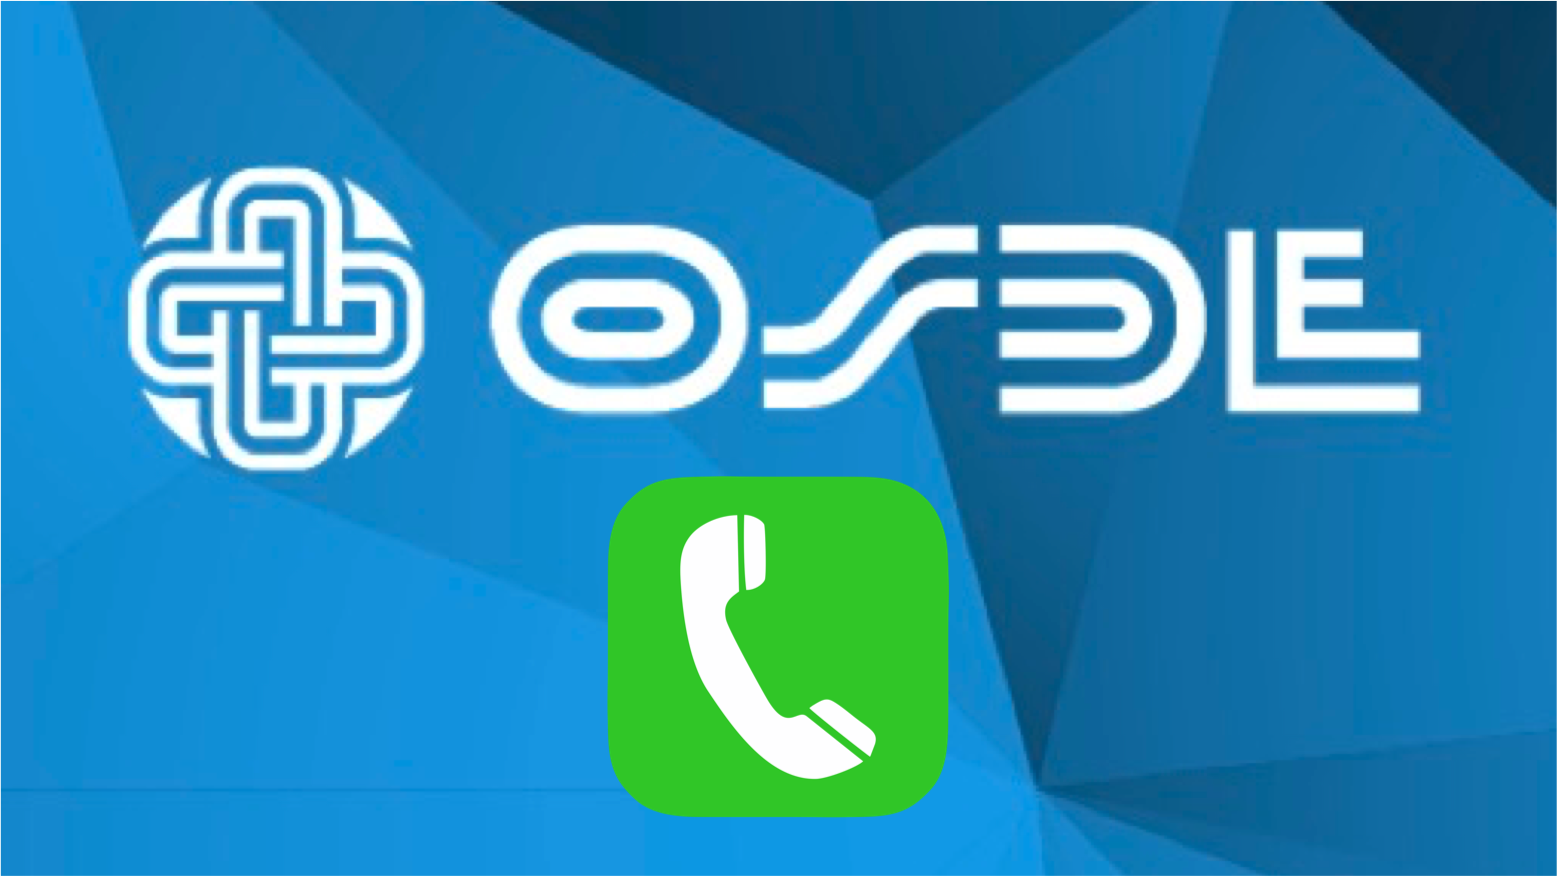 Medicina Prepaga OSDE: Teléfonos útiles para Atención al Afiliado, Emergencias, Consultas y Turnos